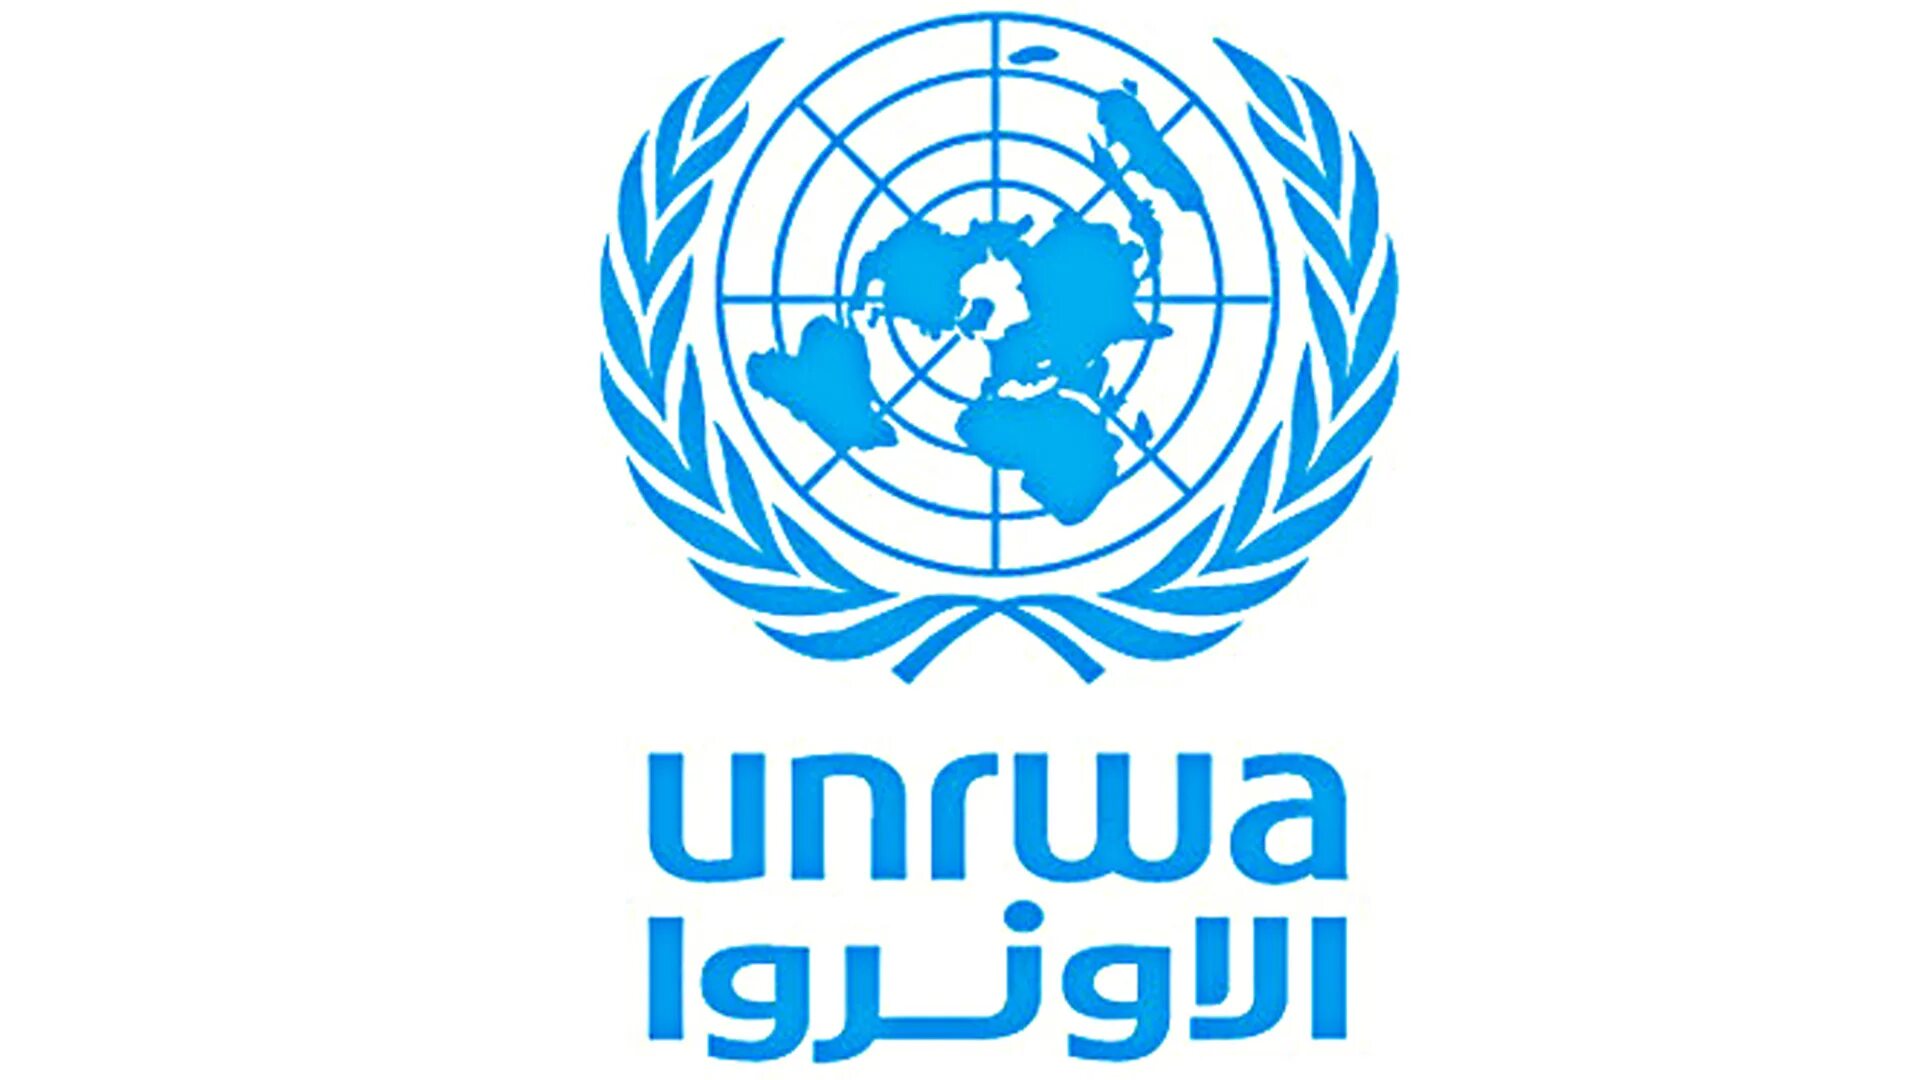 ЮНСИТРАЛ логотип. ЮНКТАД ООН. ЮНКТАД эмблема. Комитет по правам ребенка ООН.